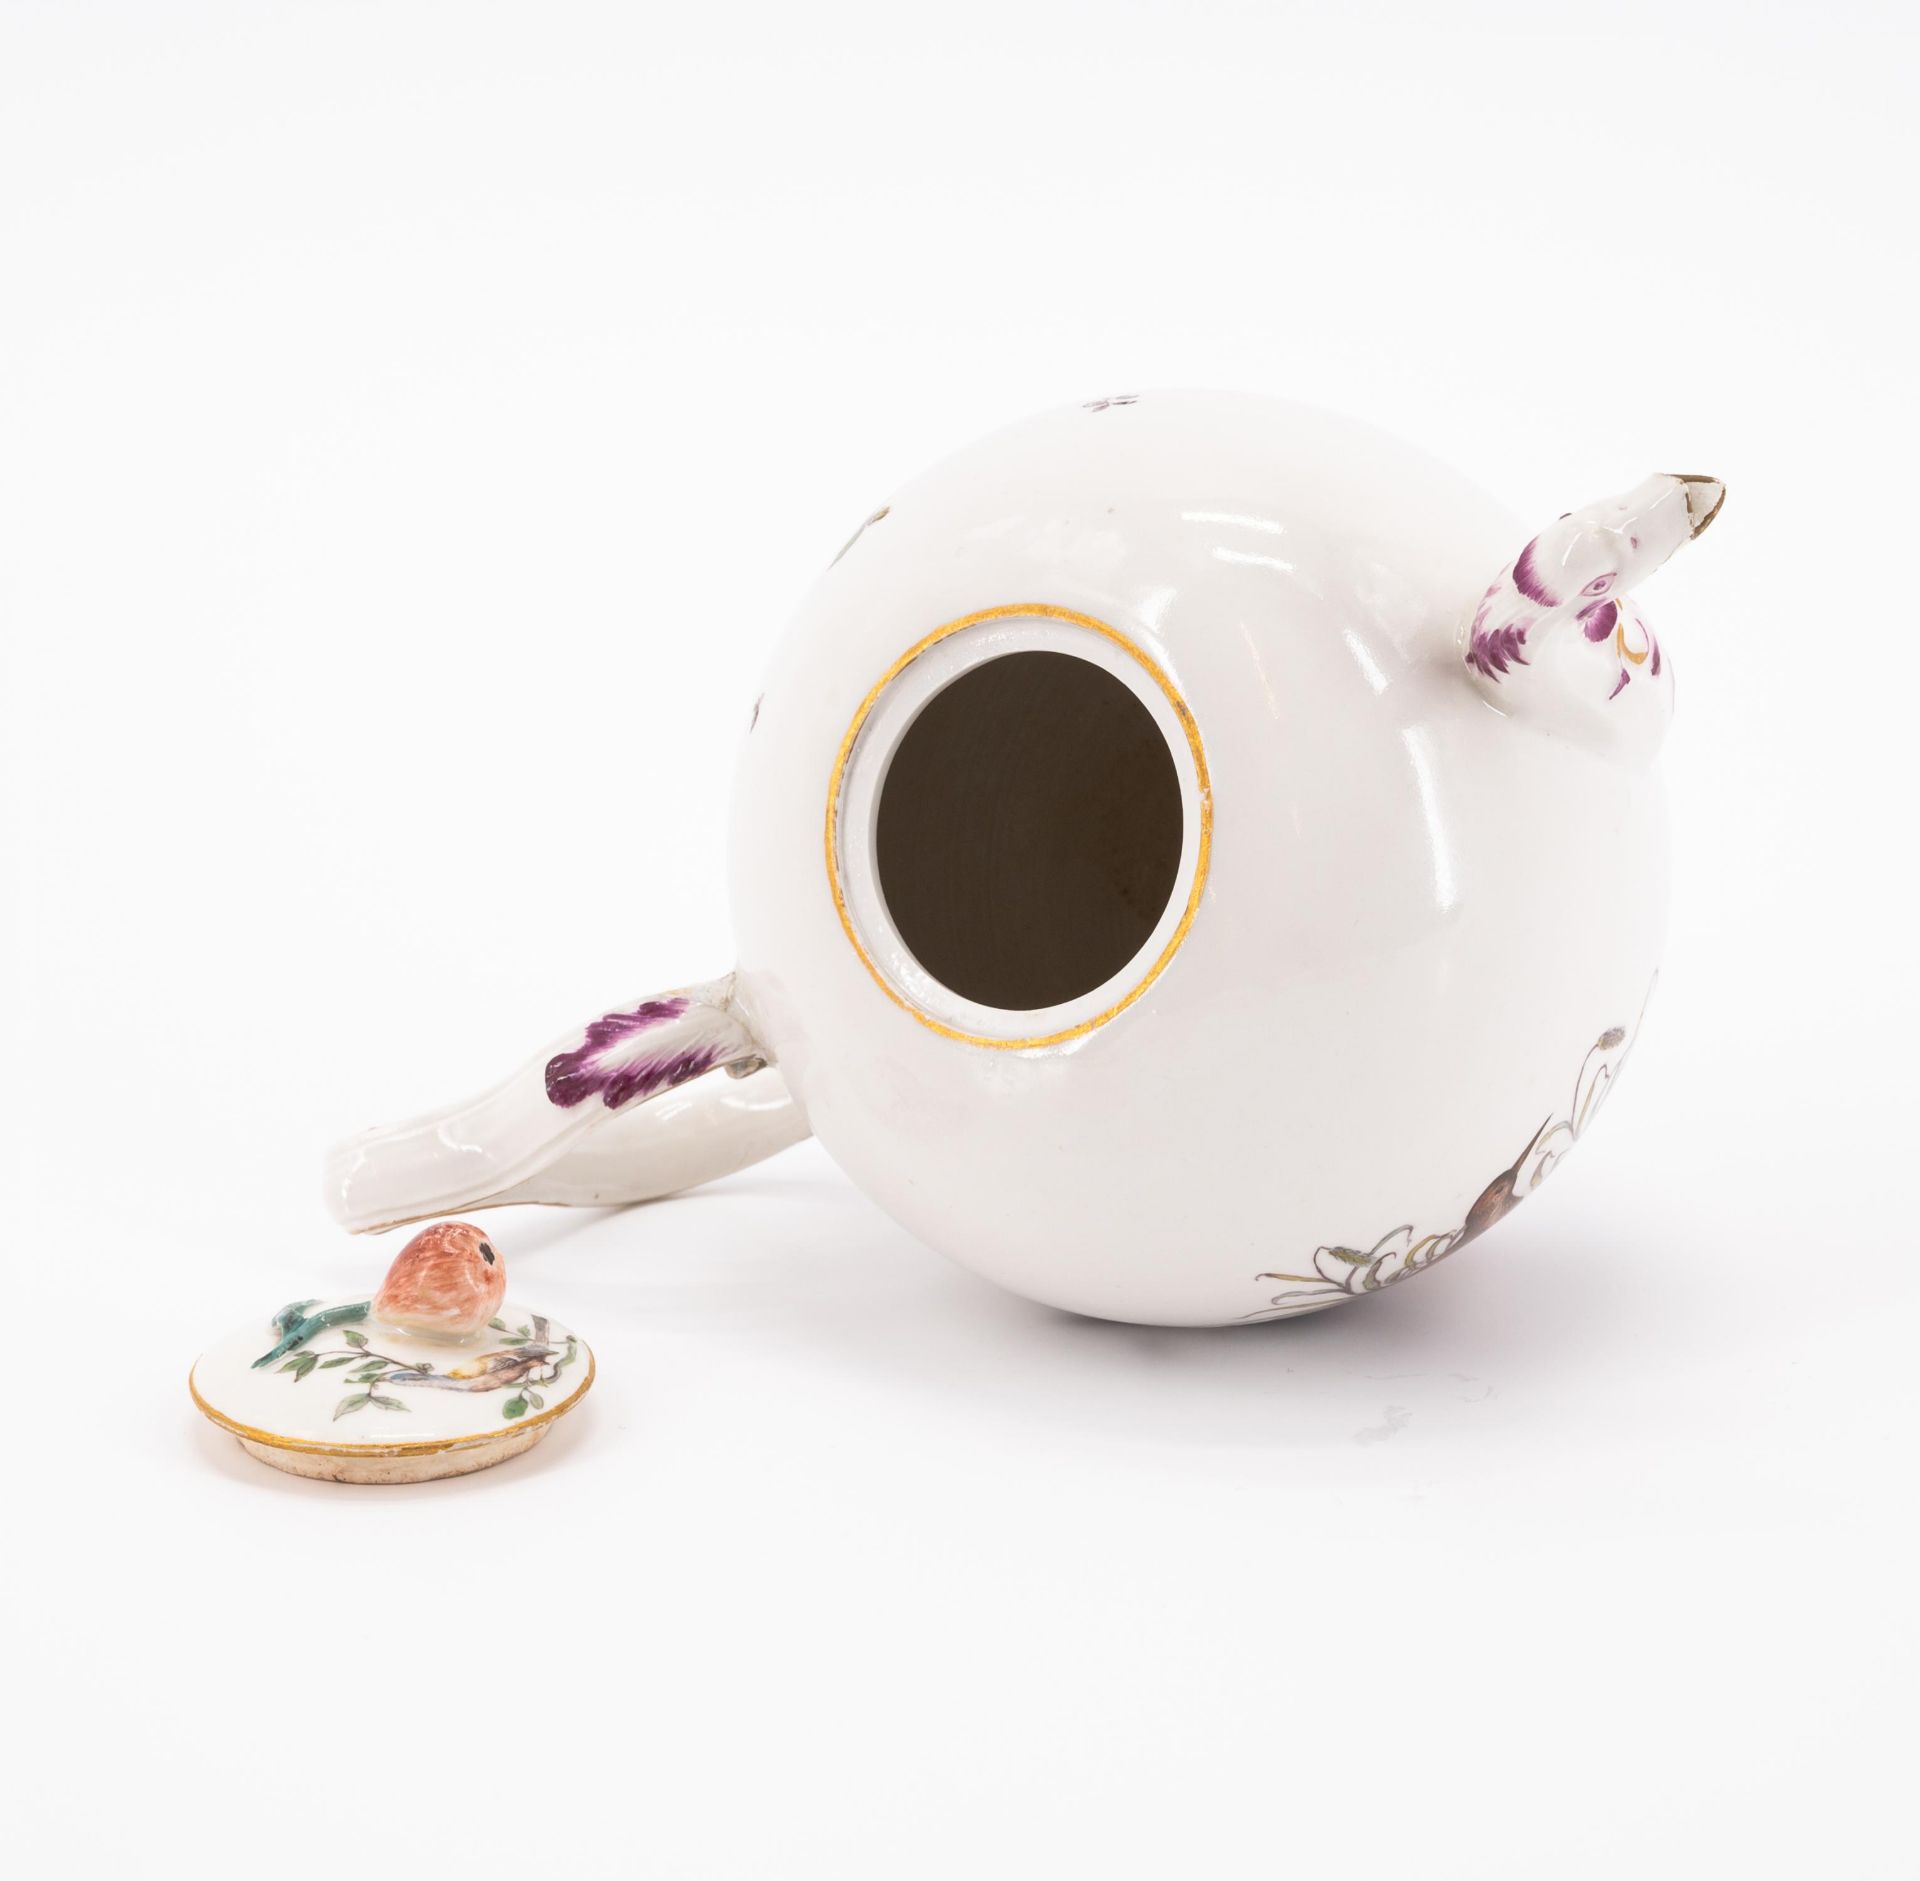 Teekanne mit Vogeldekor und Tasse mit Untertasse und Blumendekor - Bild 5 aus 11